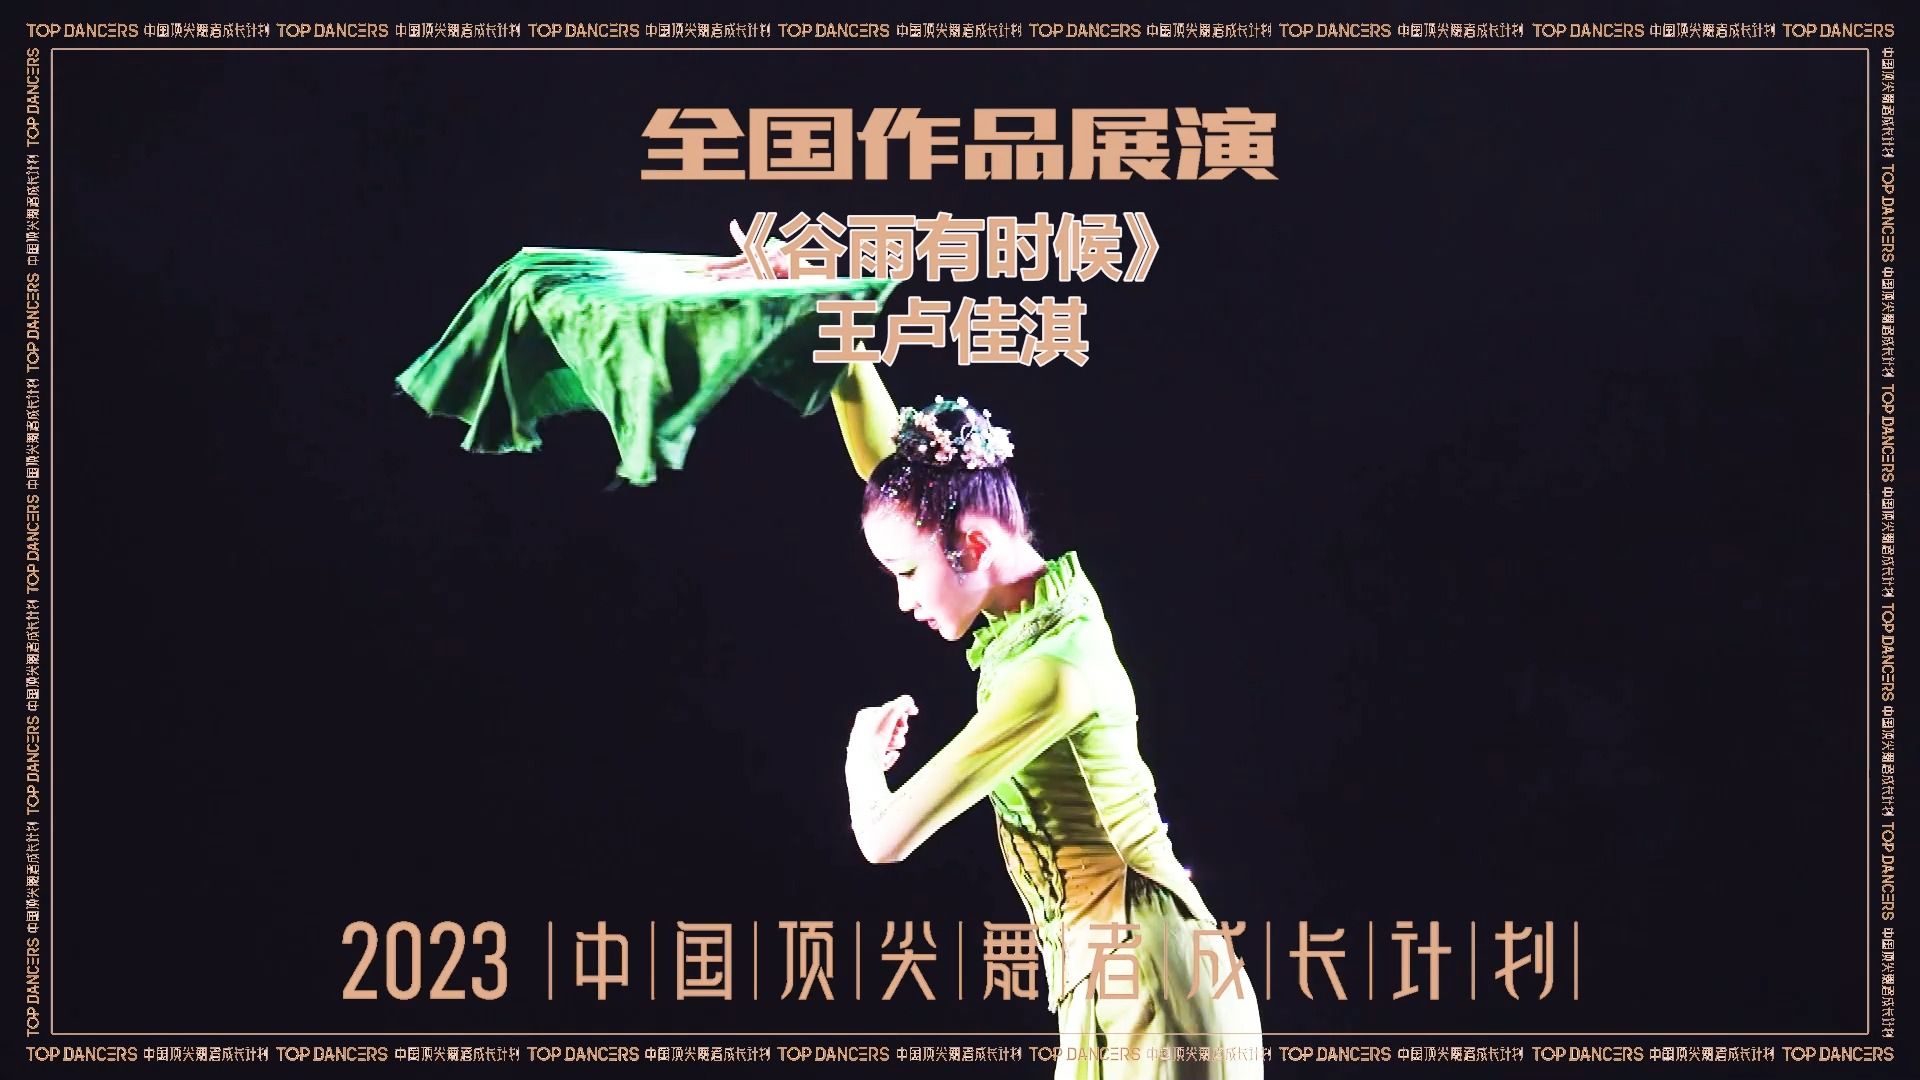 【2023中国顶尖舞者全国作品展演】王卢佳淇 中国舞 《谷雨有时候》